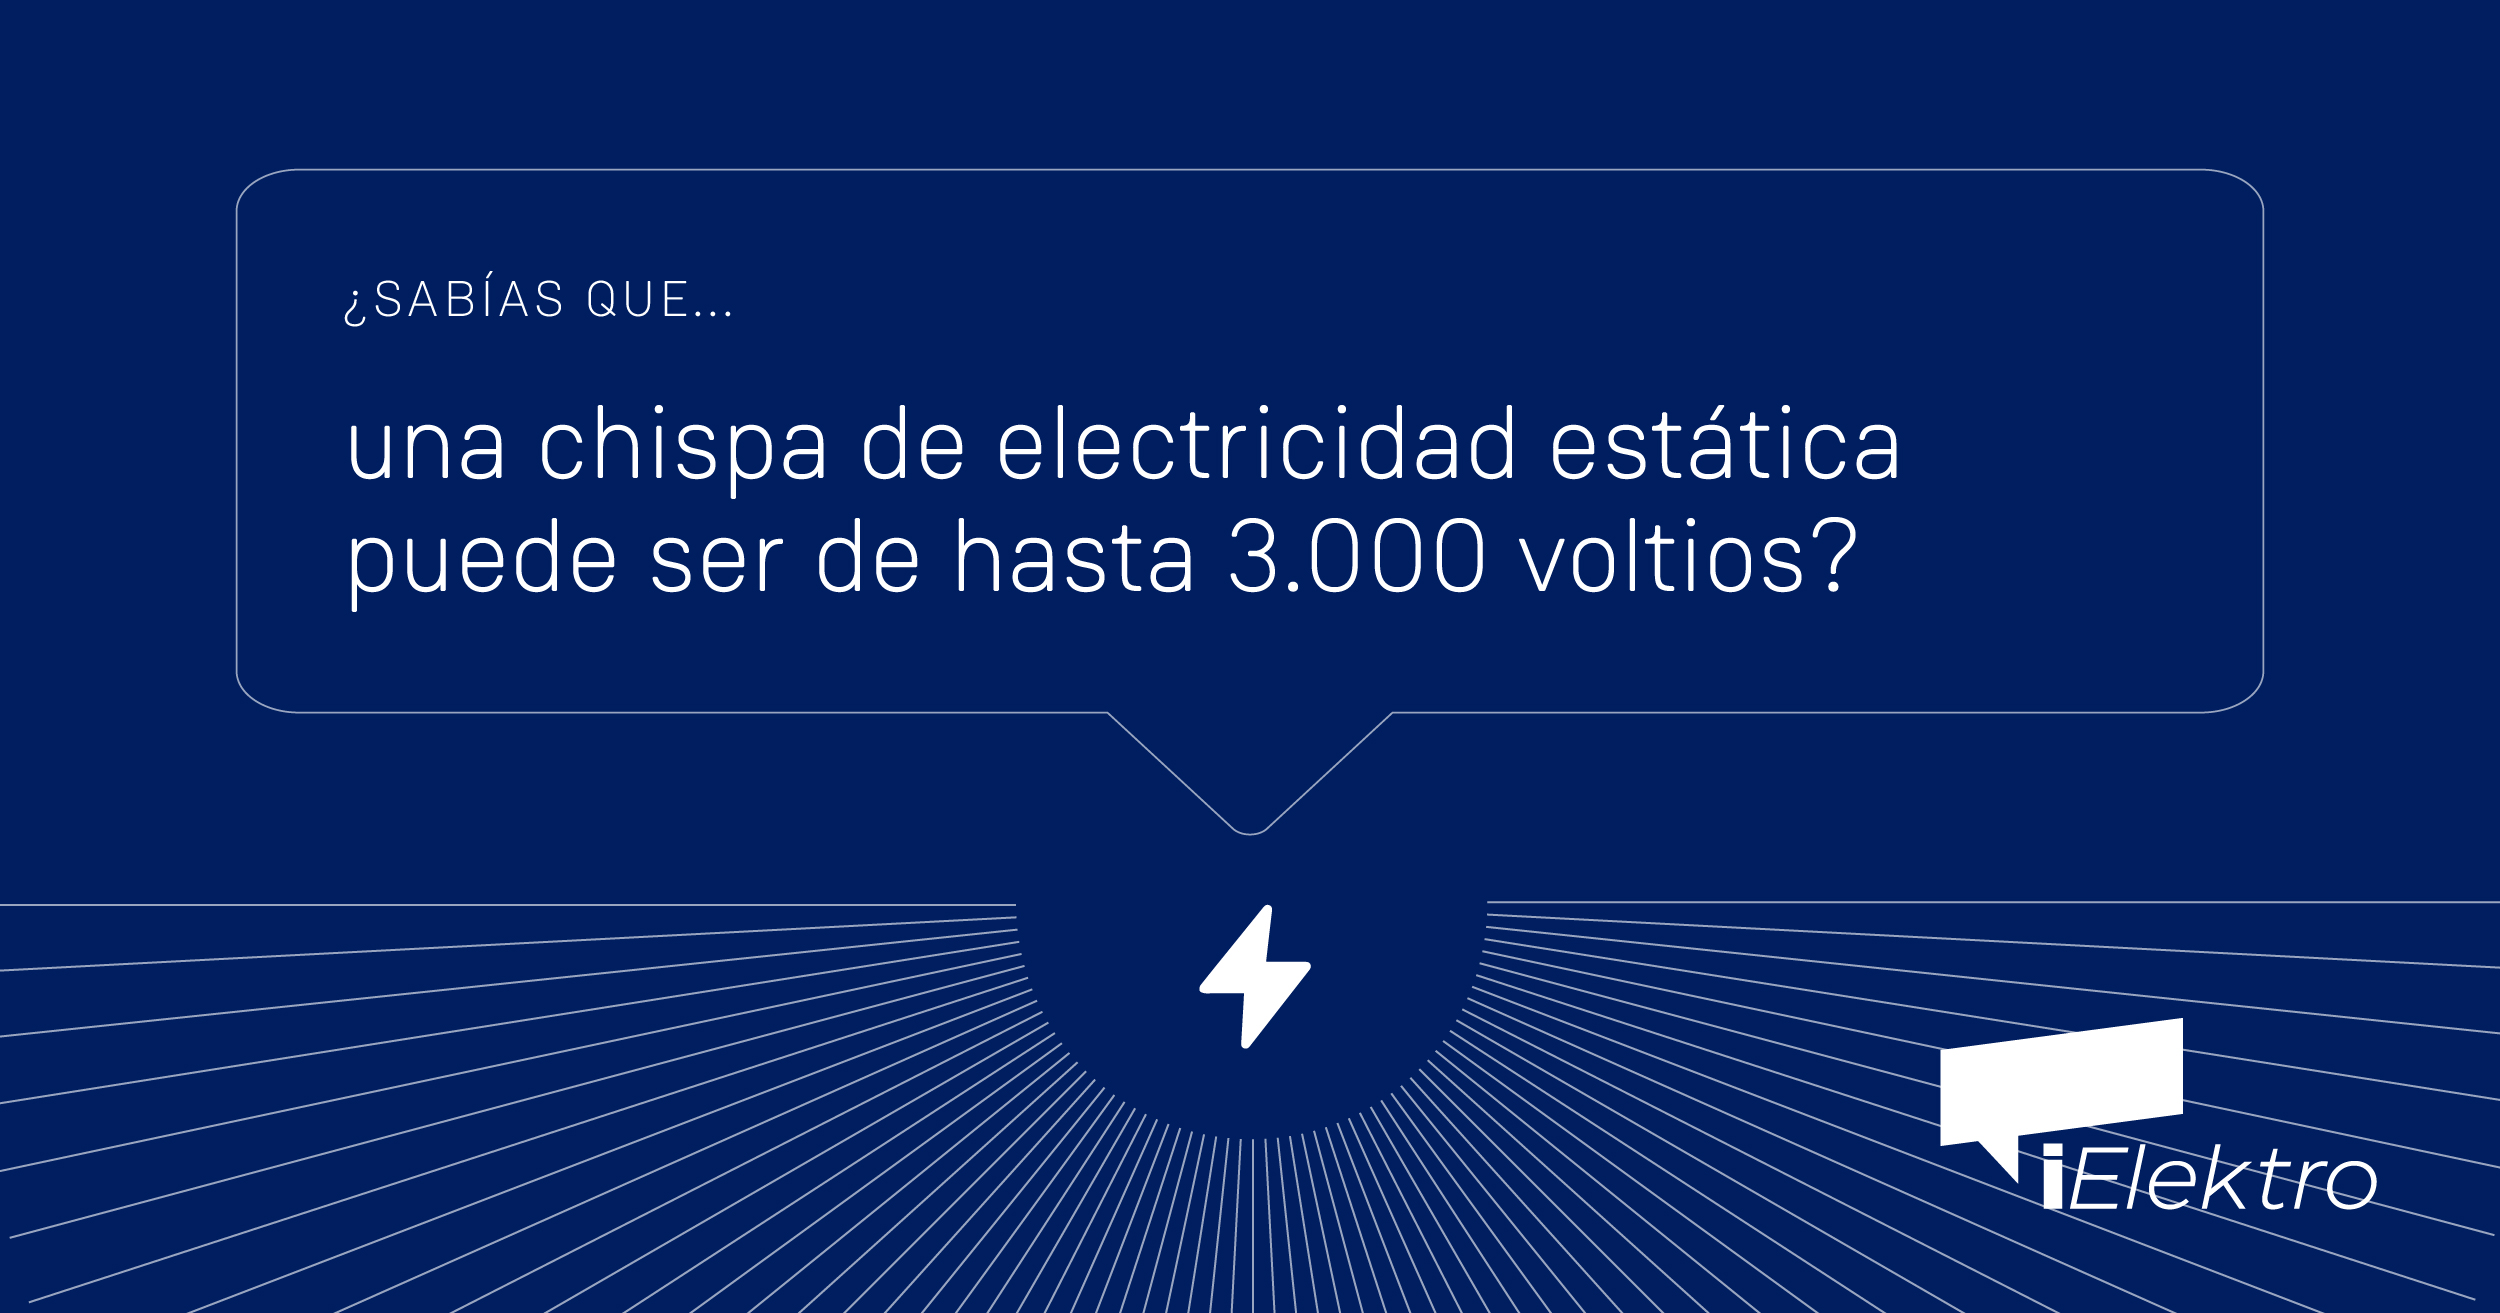 Sabías que una chispa de electricidad estática puede ser de hasta 3000 voltios